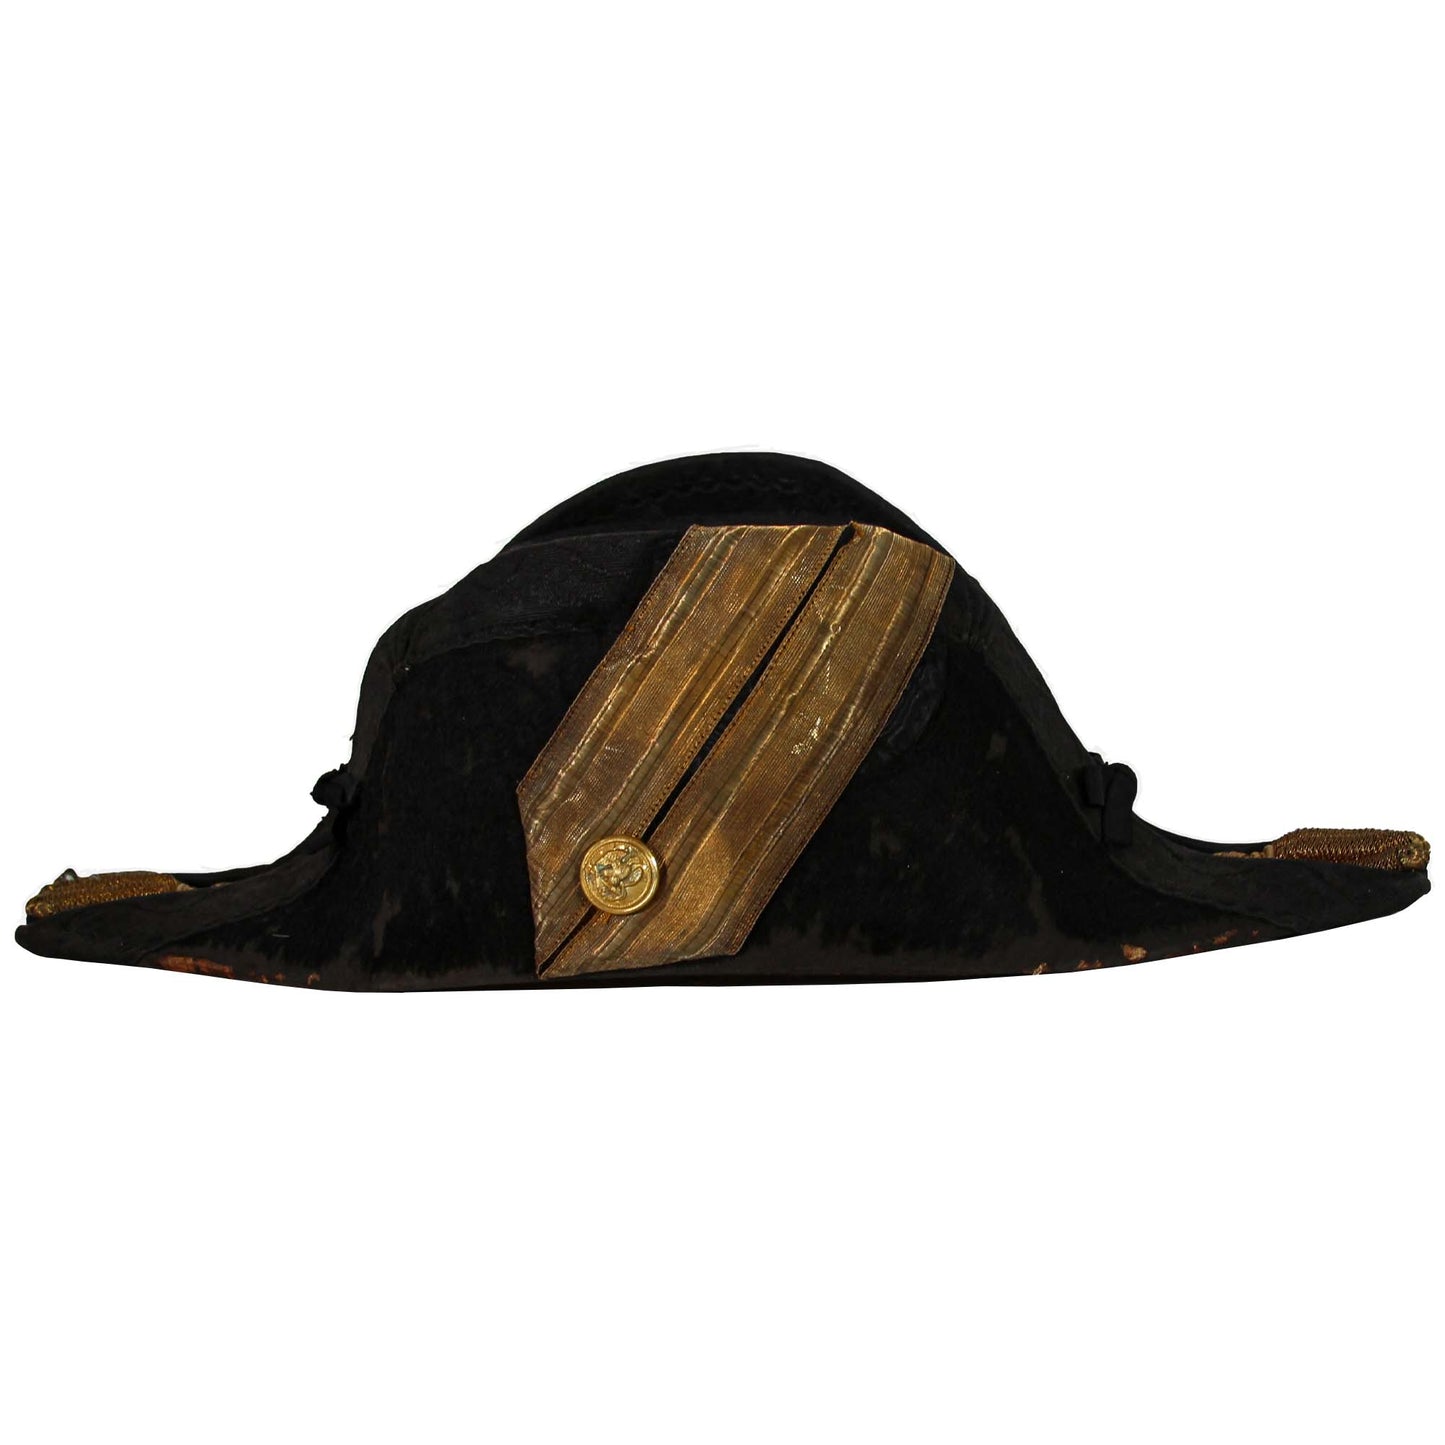 United States Civil War H.F. Kingman USN Military Bicorne Hat & Tassel Head Piece